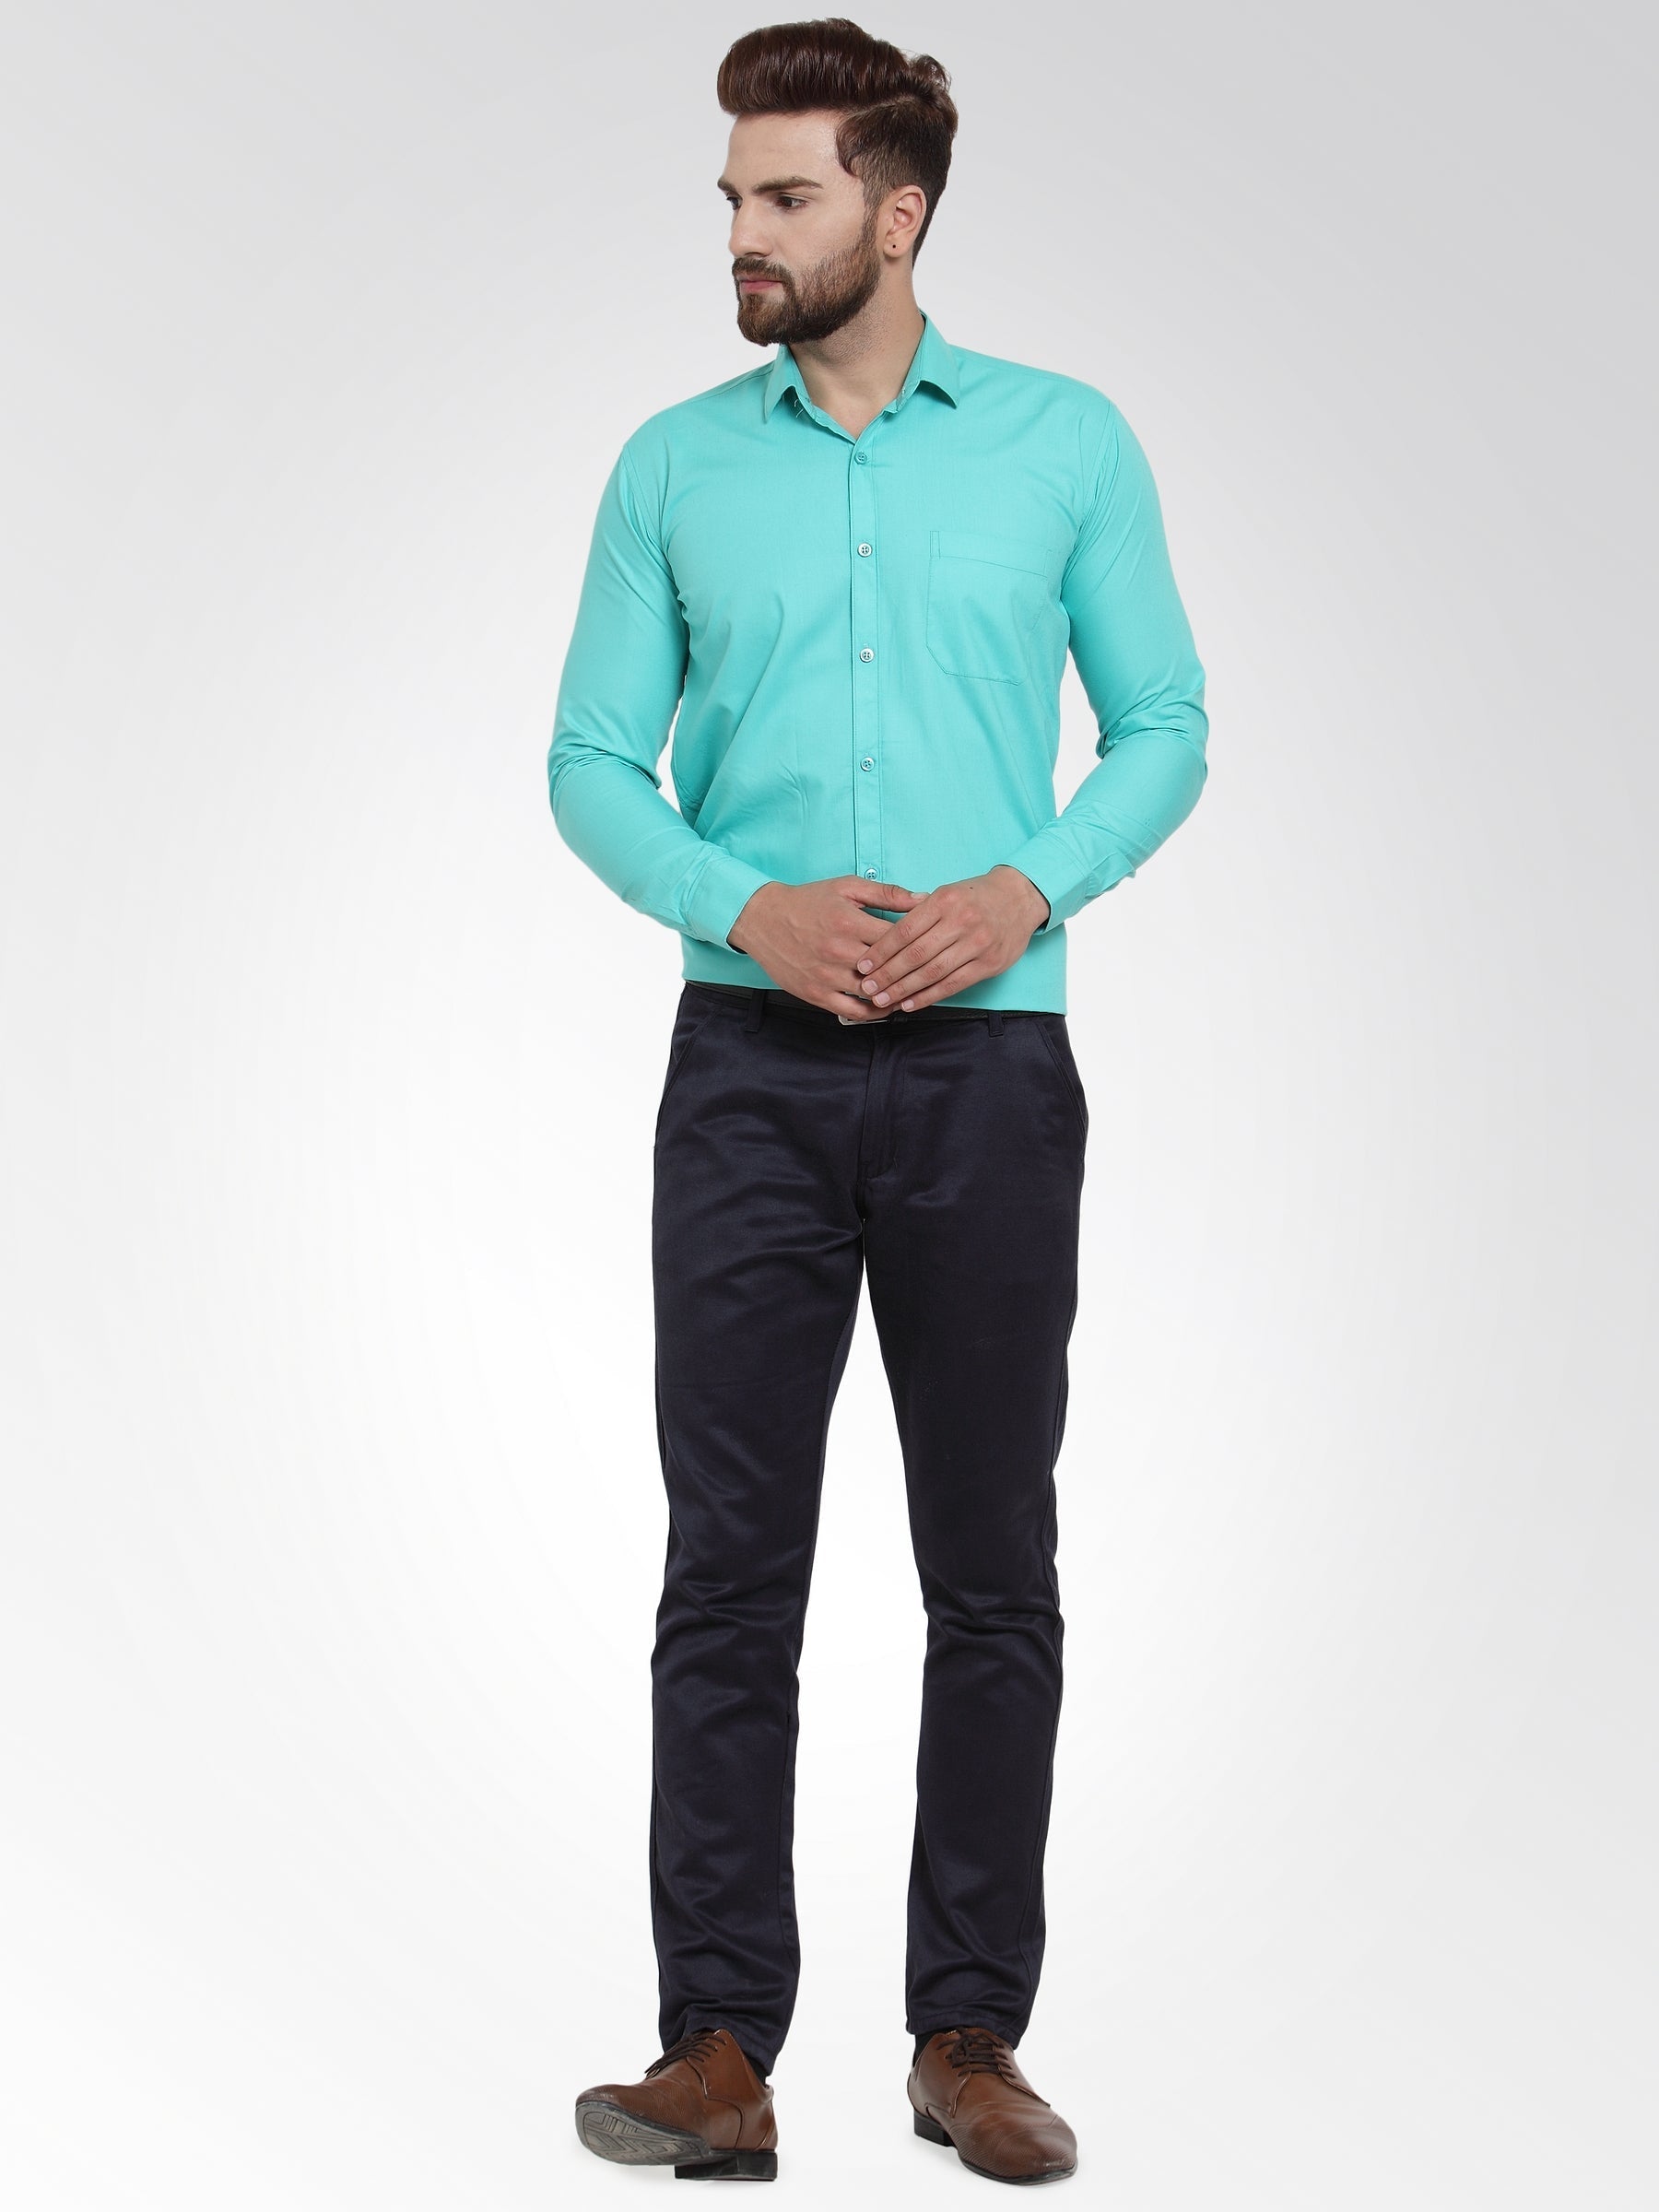 Men's Cotton Solid Aqua Blue Formal Shirt's ( SF 361Aqua ) - Jainish